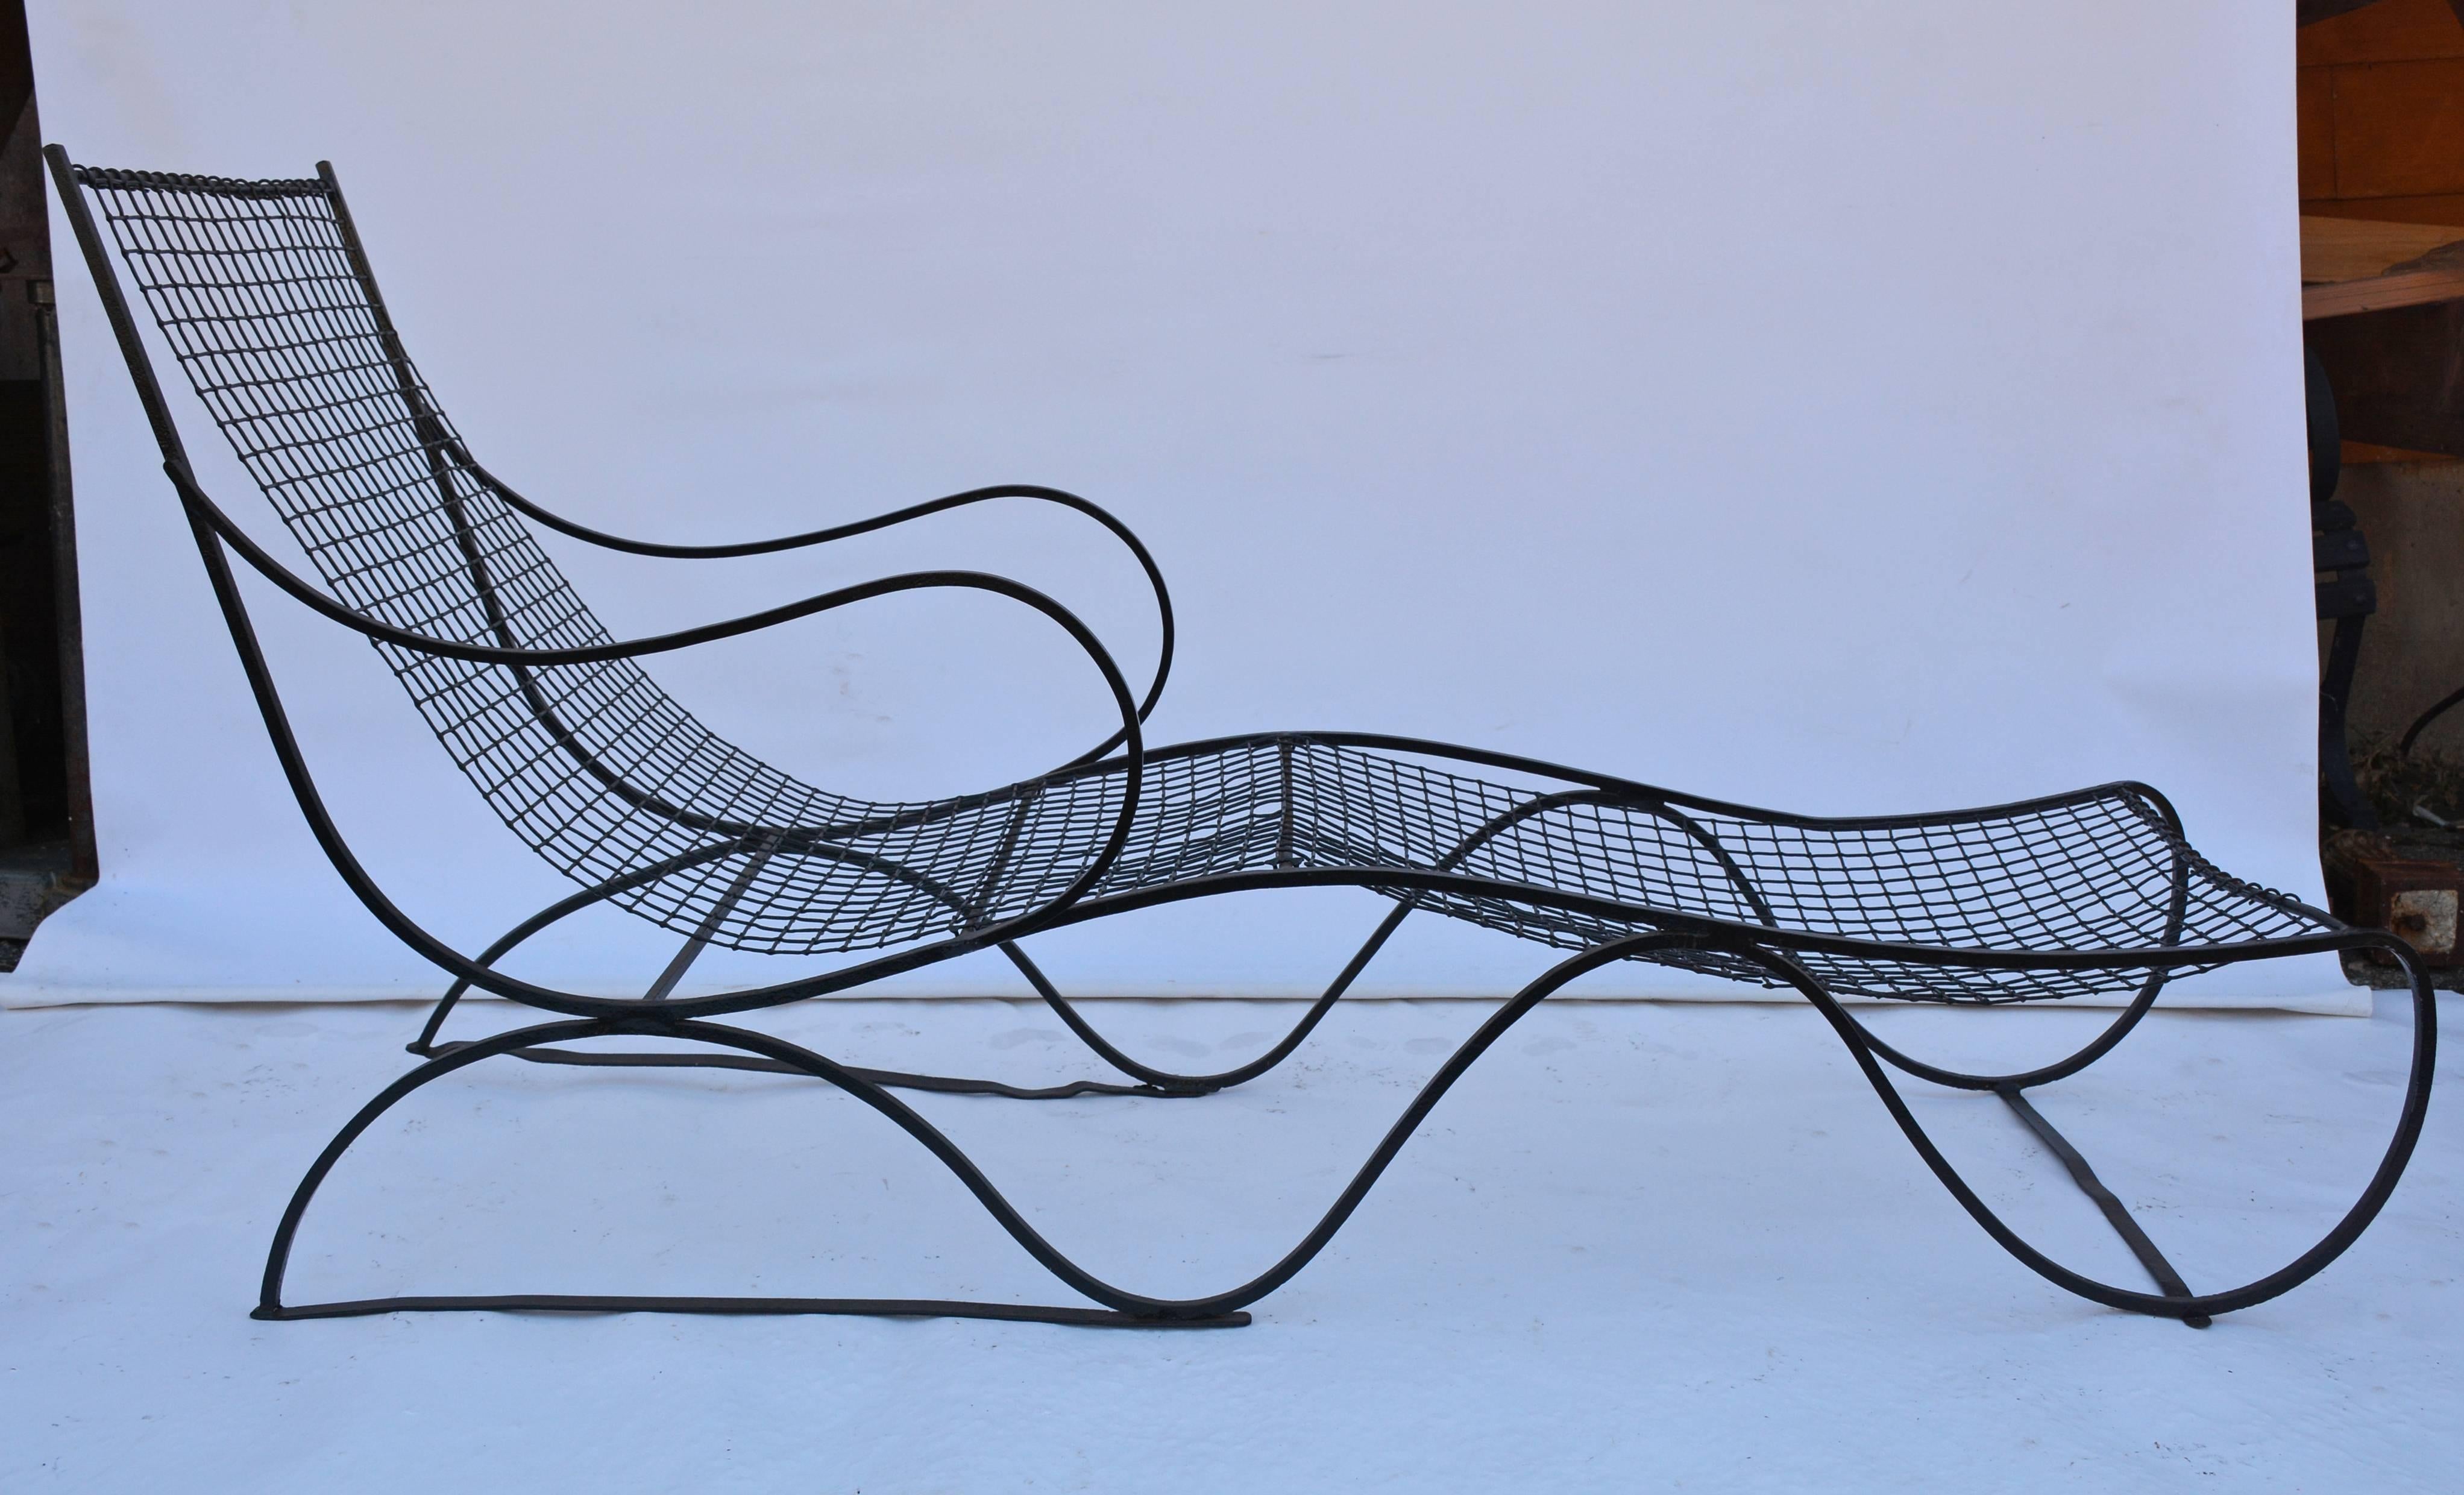 Die wellenförmige, schwarze Garten-Chaise-Lounge aus Metall ist relativ leicht und lässt sich leicht bewegen. Der Sitz ist an den Kniekehlen hochgezogen, was ihn sehr bequem macht. Das Netz könnte ein gepolstertes flaches Kissen aufnehmen. Neu